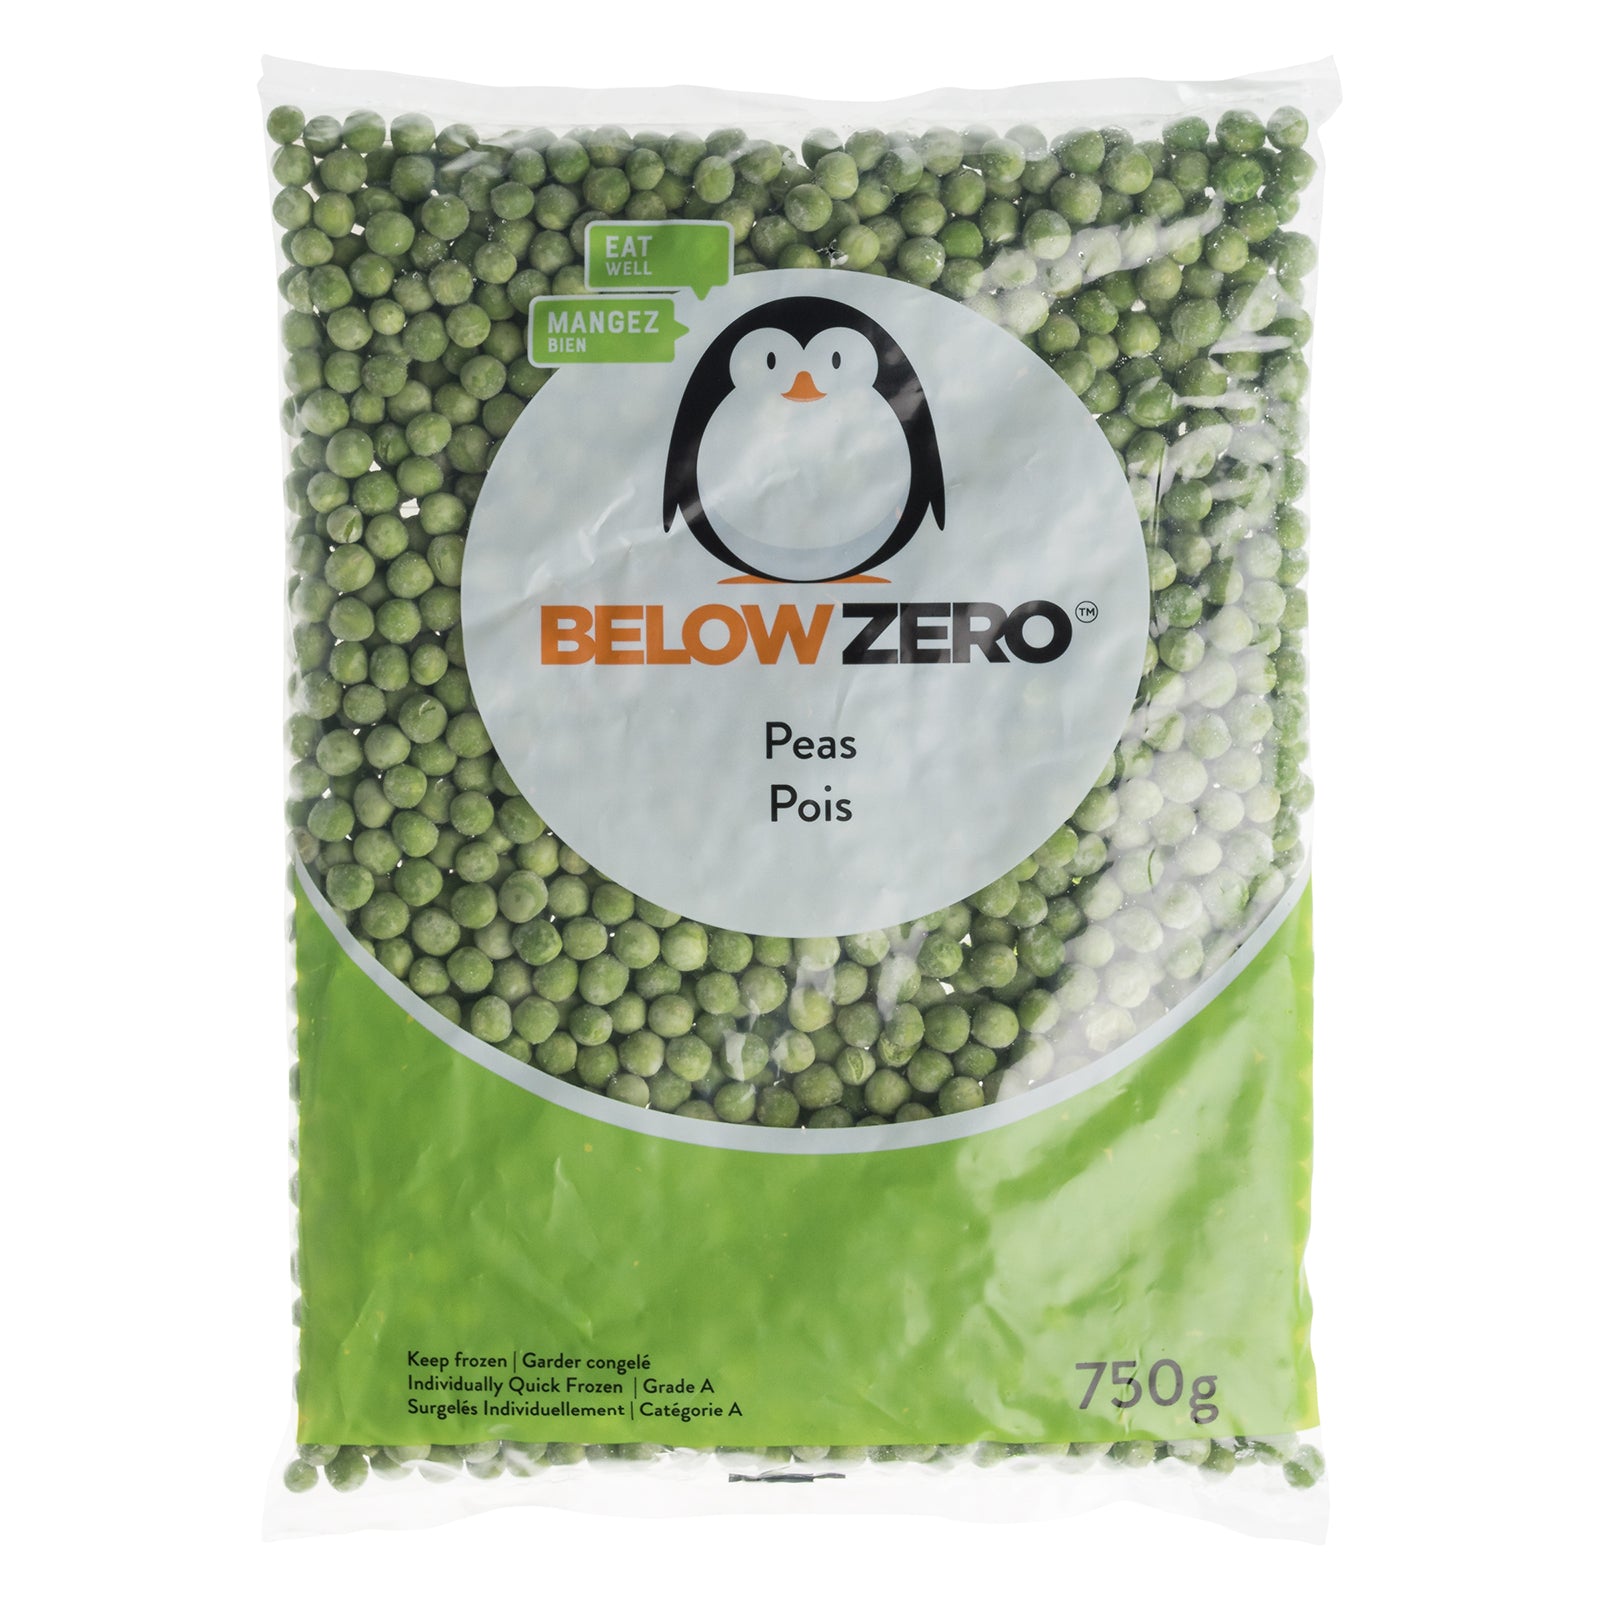 BELOW ZERO Peas